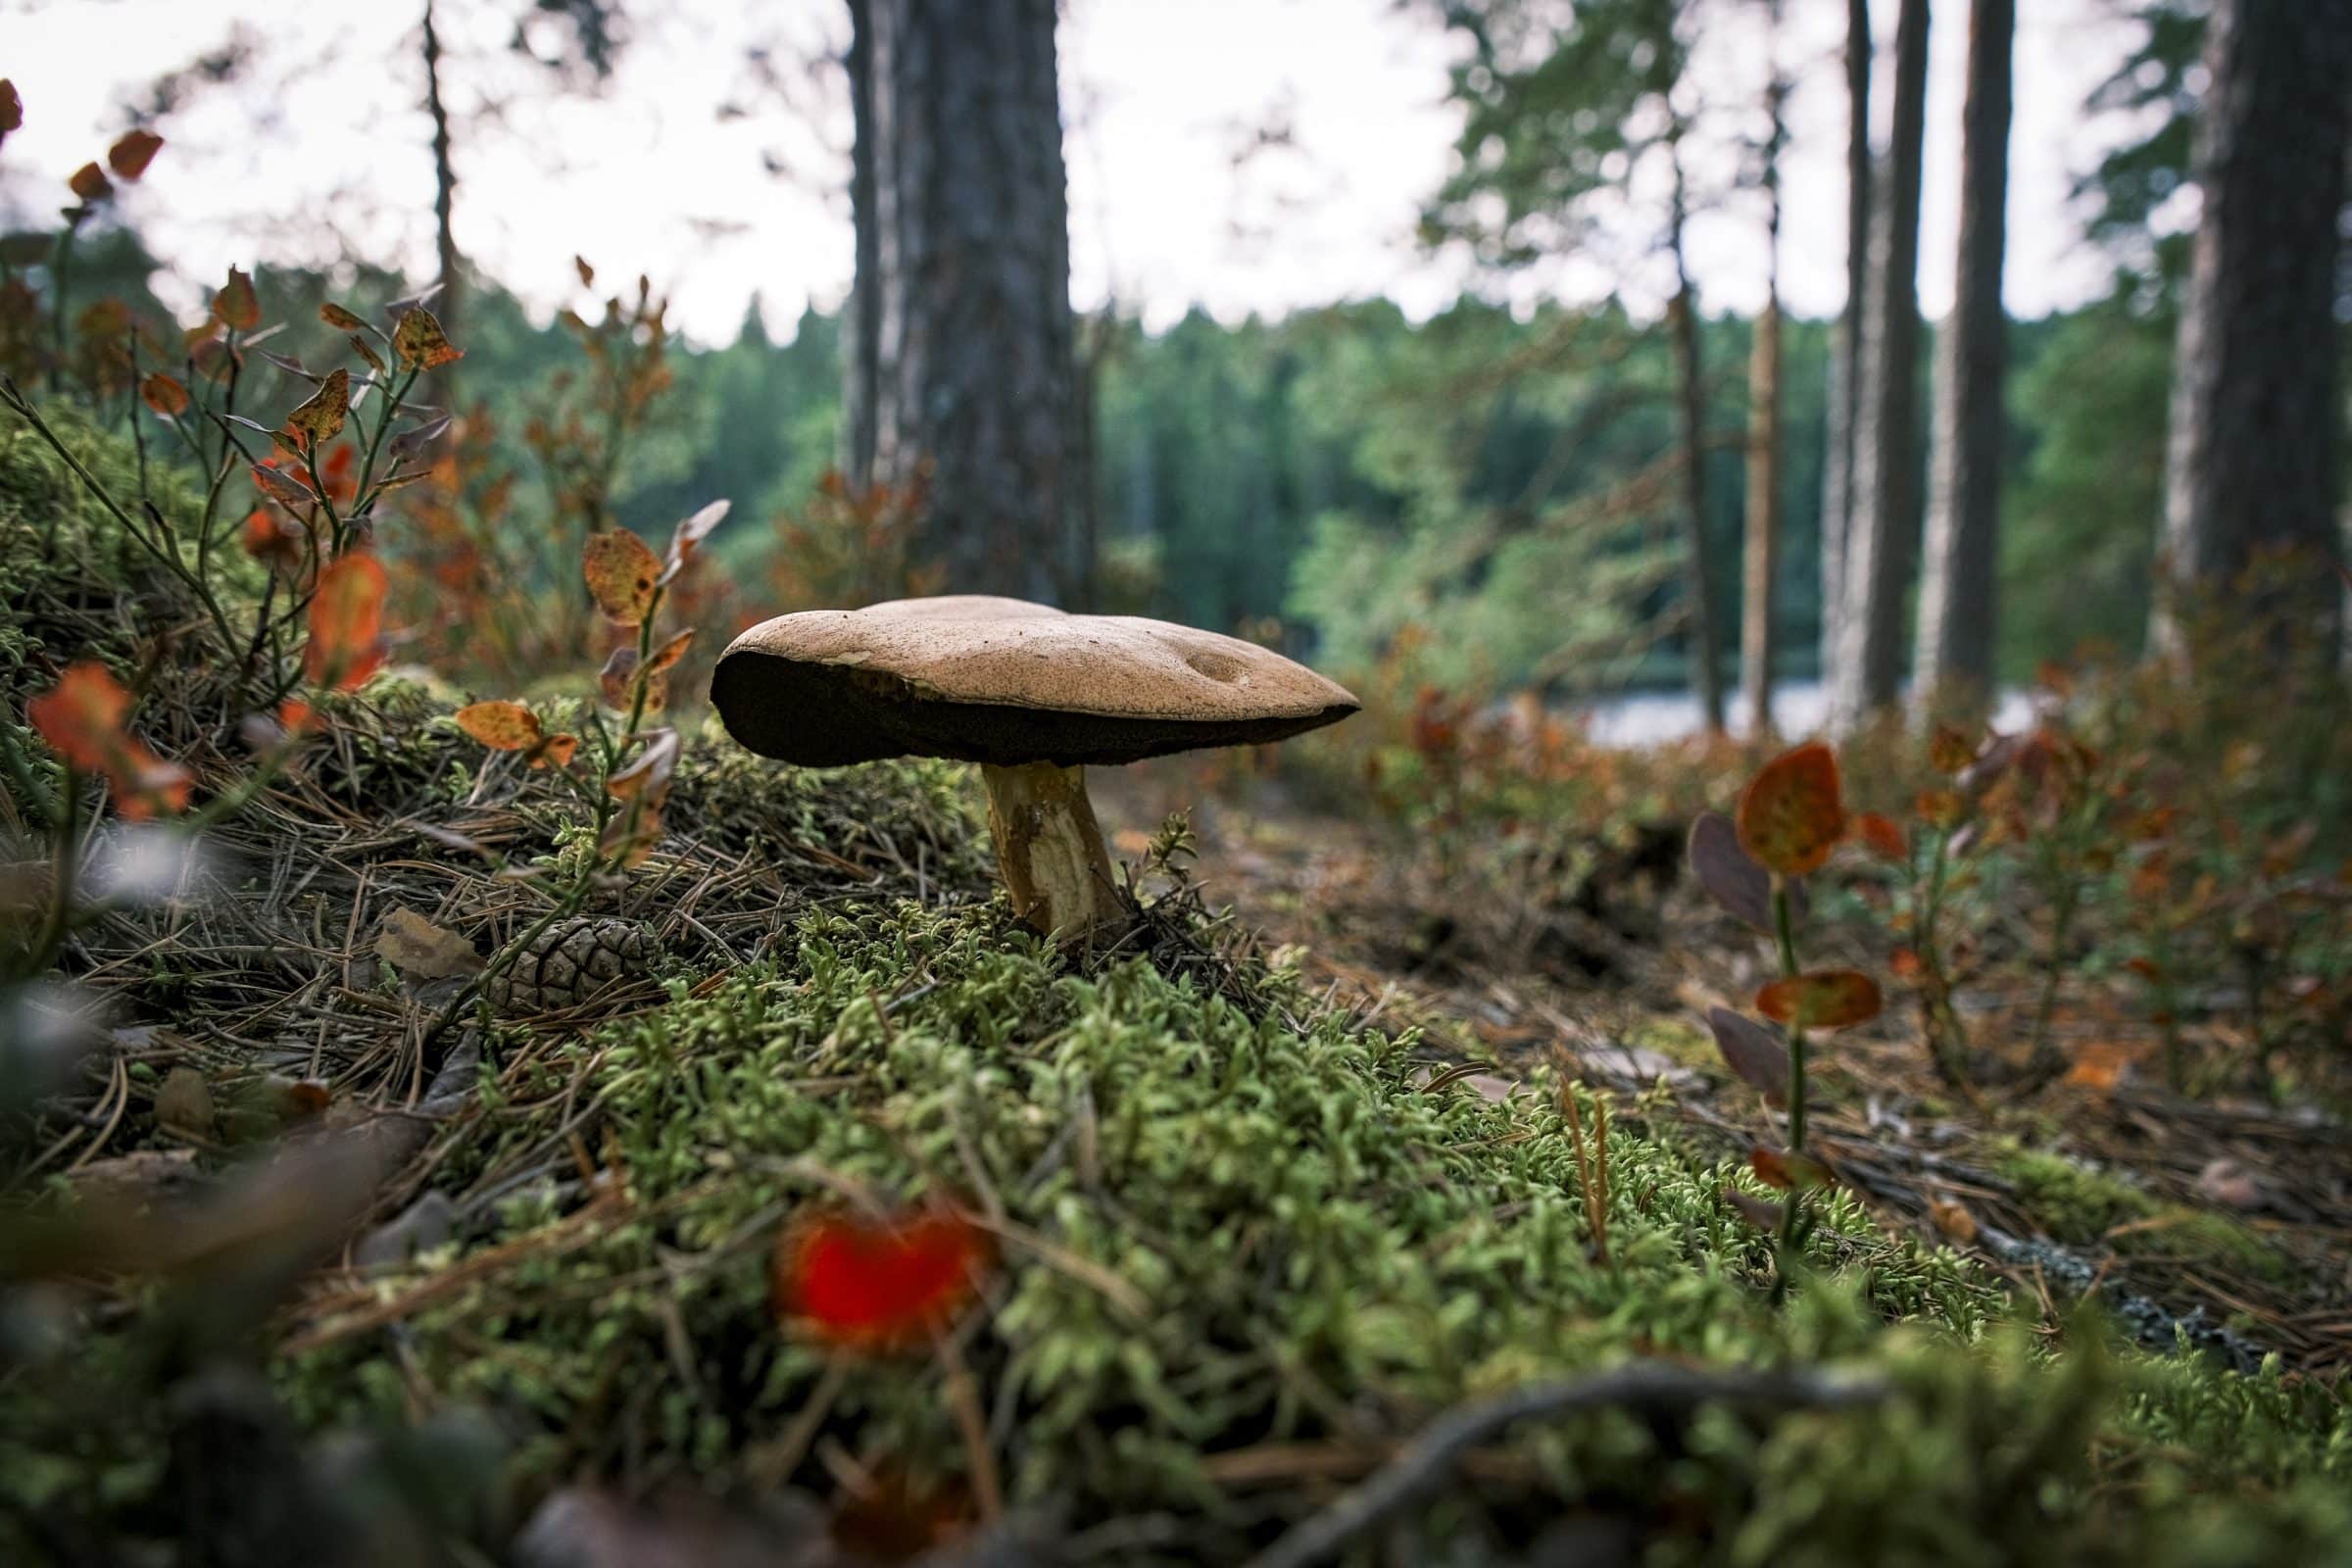 De bossen van Värmland